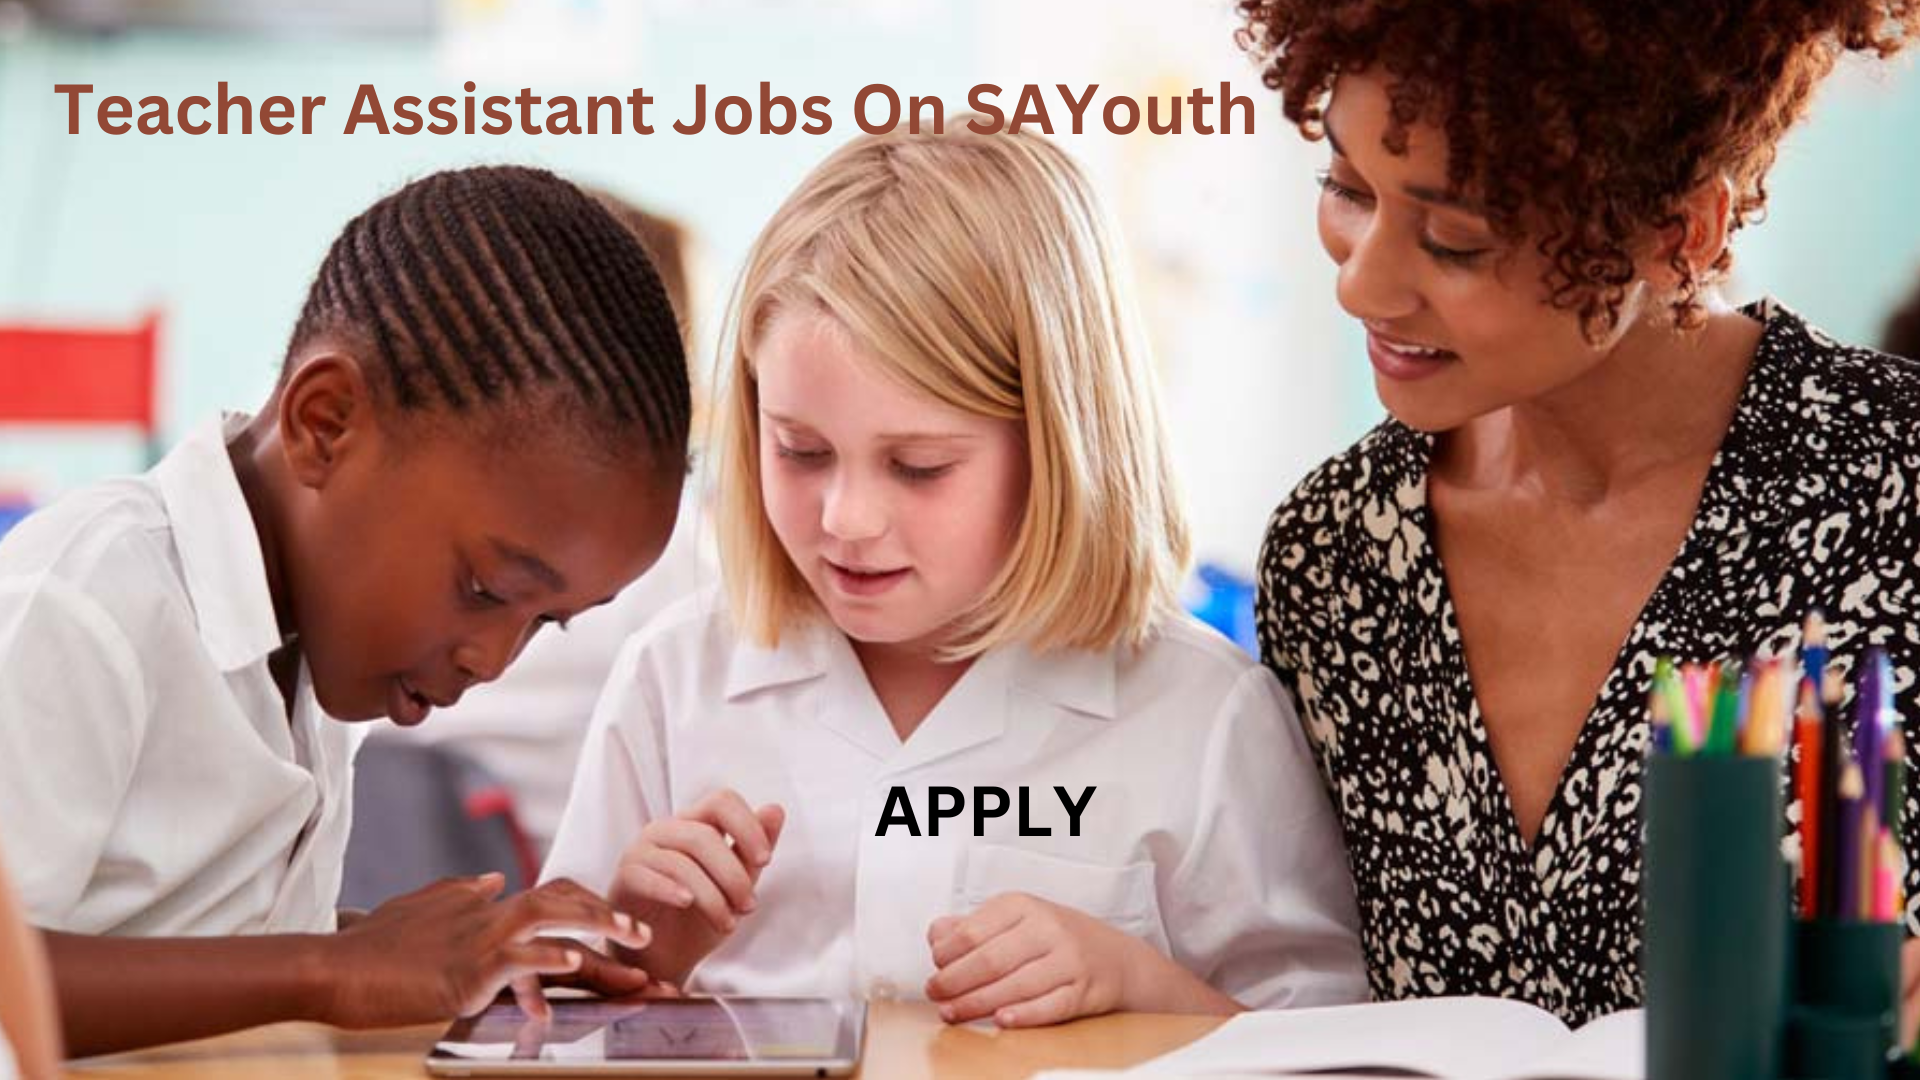 Apply For Teacher Assistant Jobs On SAYouth